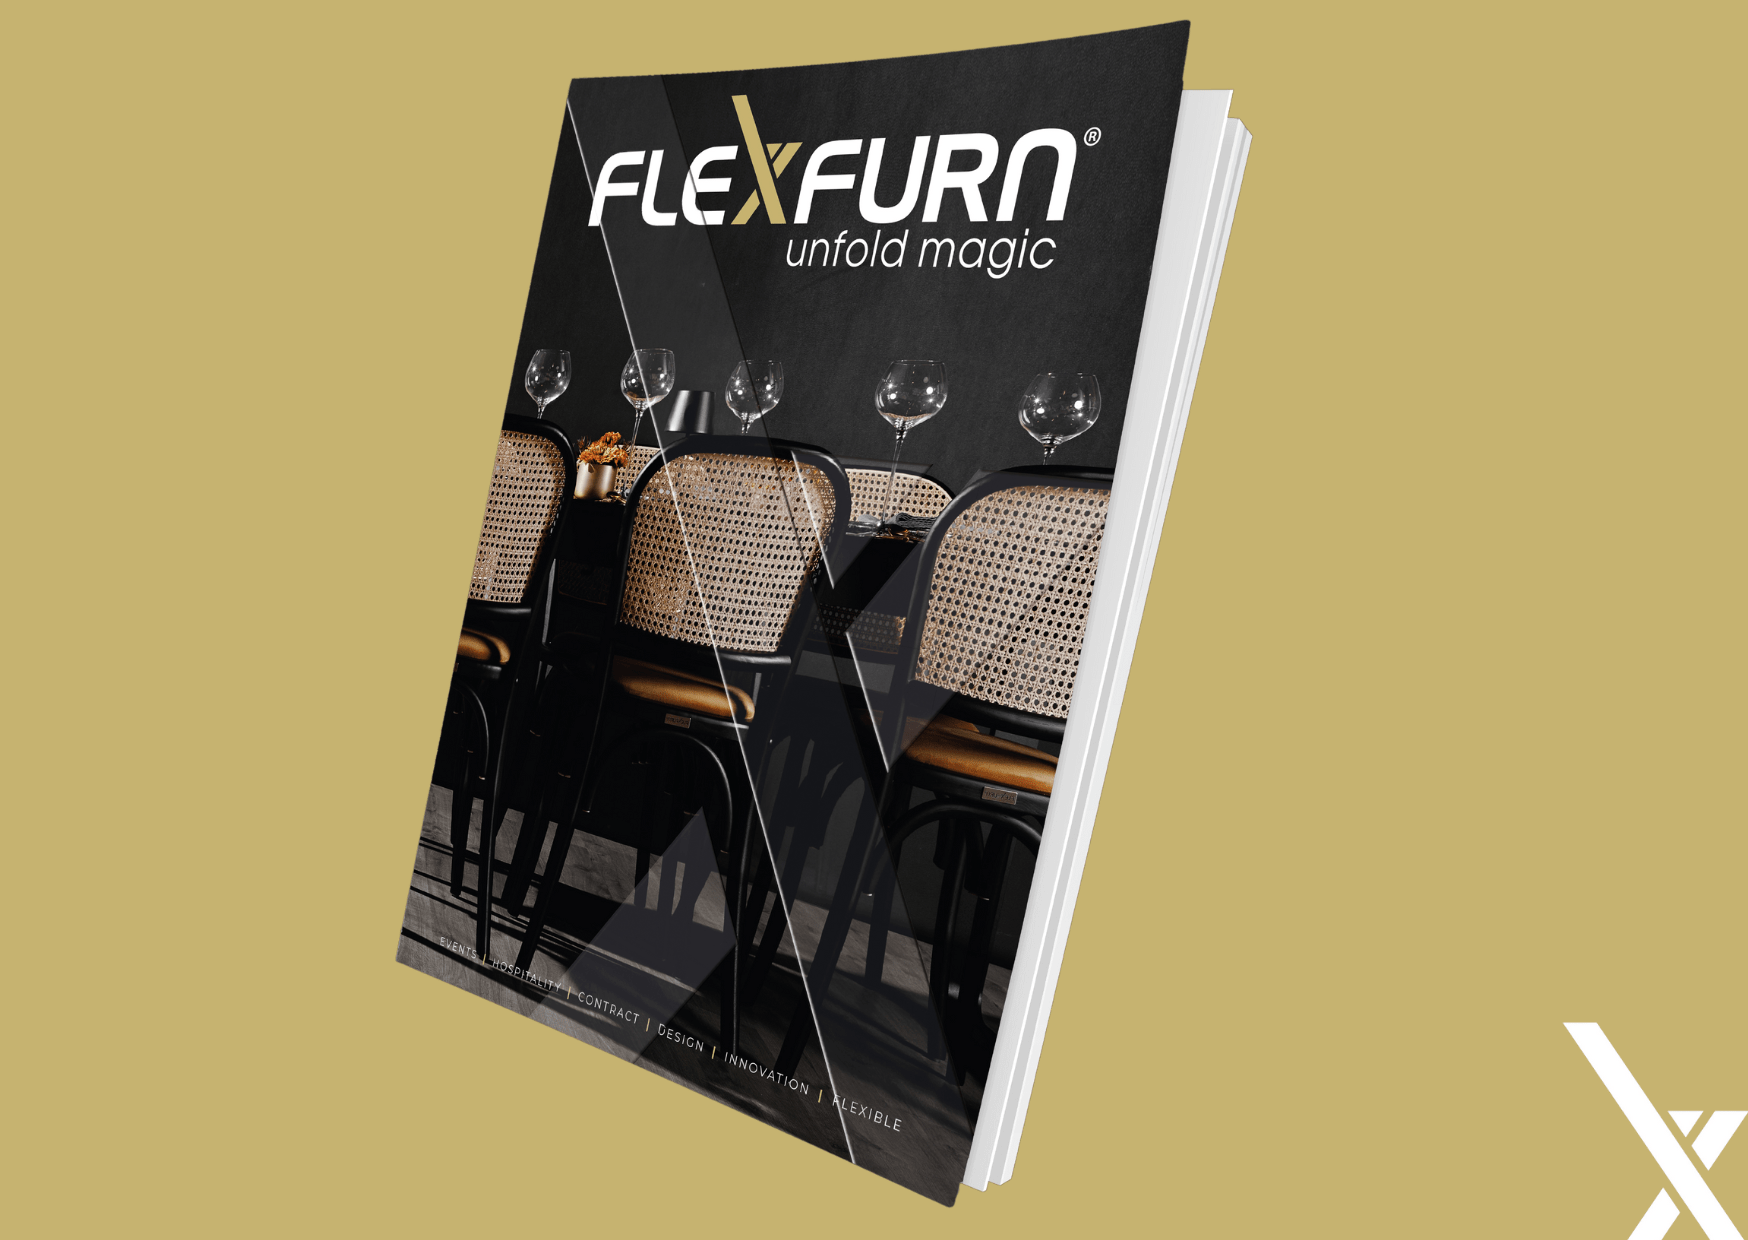 Een frisse wind: ontdek Flexfurn’s nieuwe stijl!